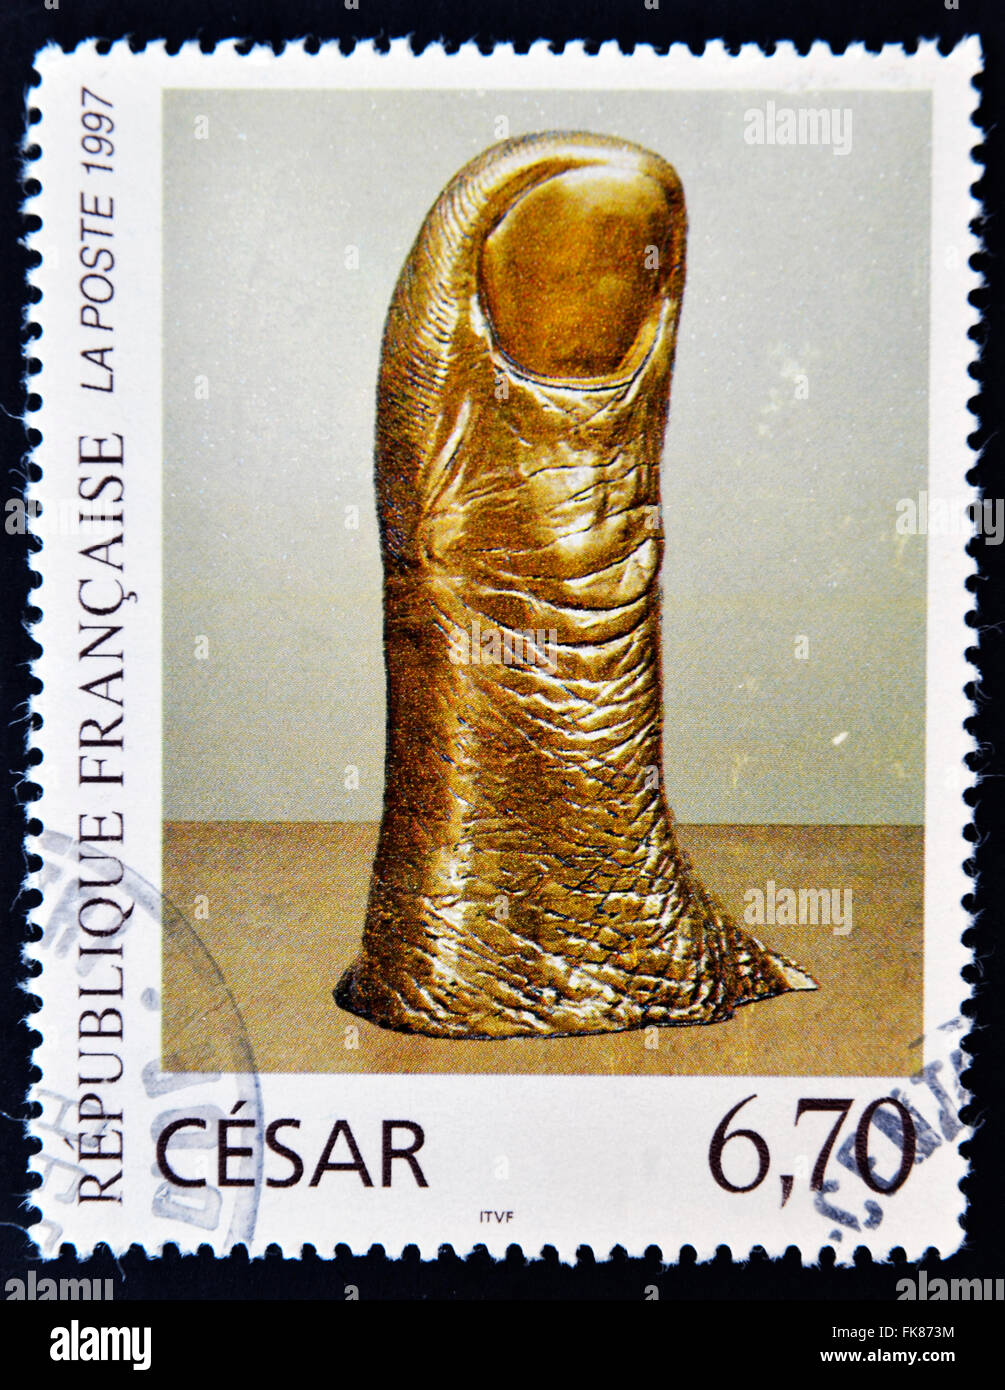 FRANCE - circa 1997 : timbre imprimé en France montre le pouce, poli Bronce par Cesar, vers 1997 Banque D'Images